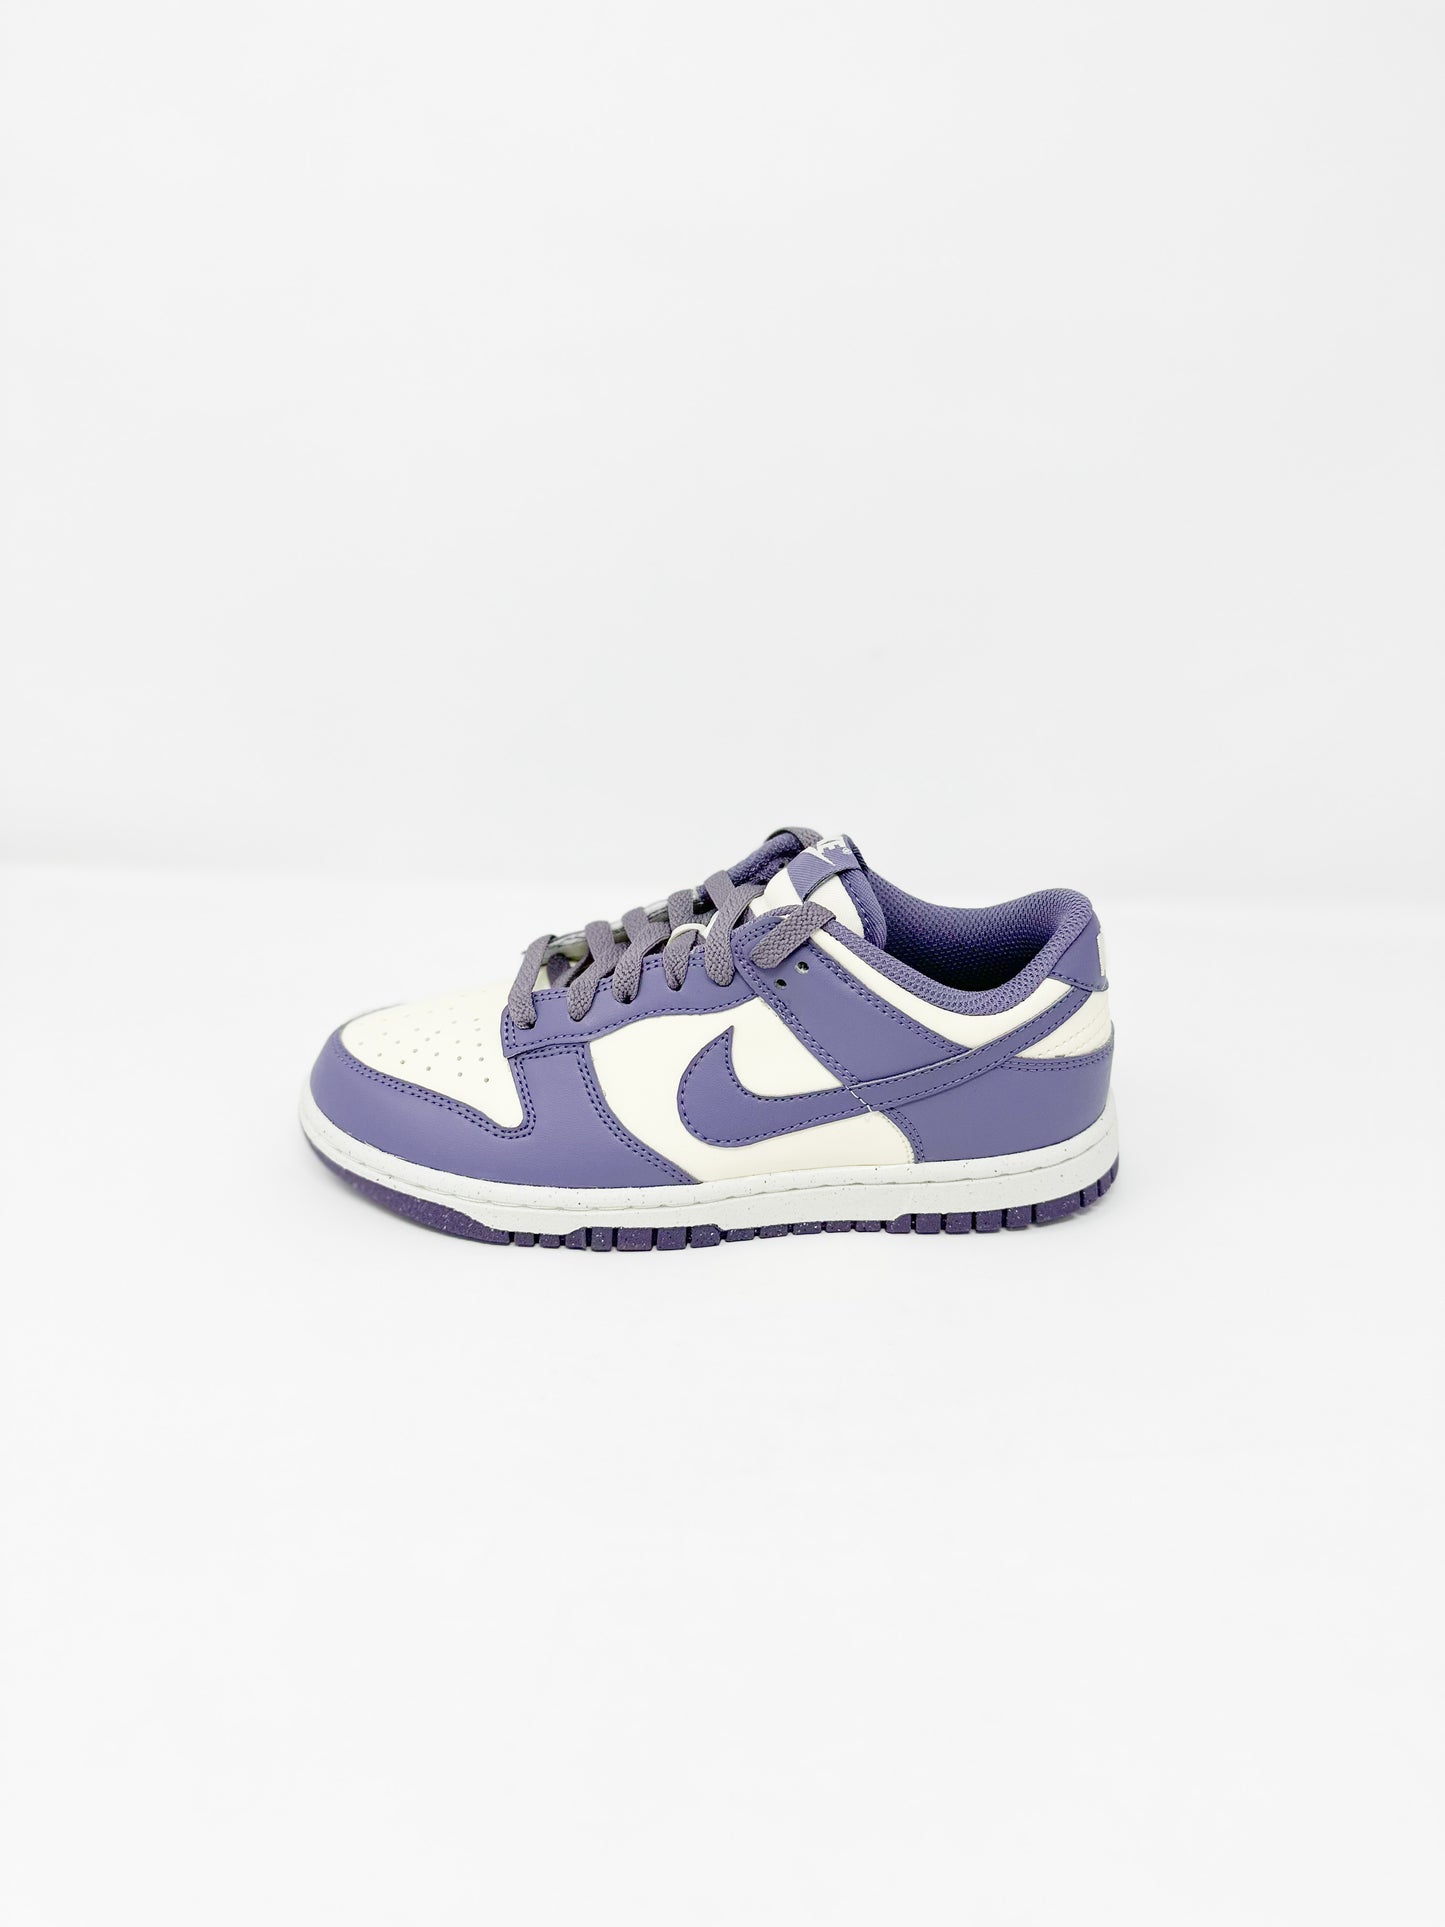 Nike Dunk Low “Purple Sail” (W)